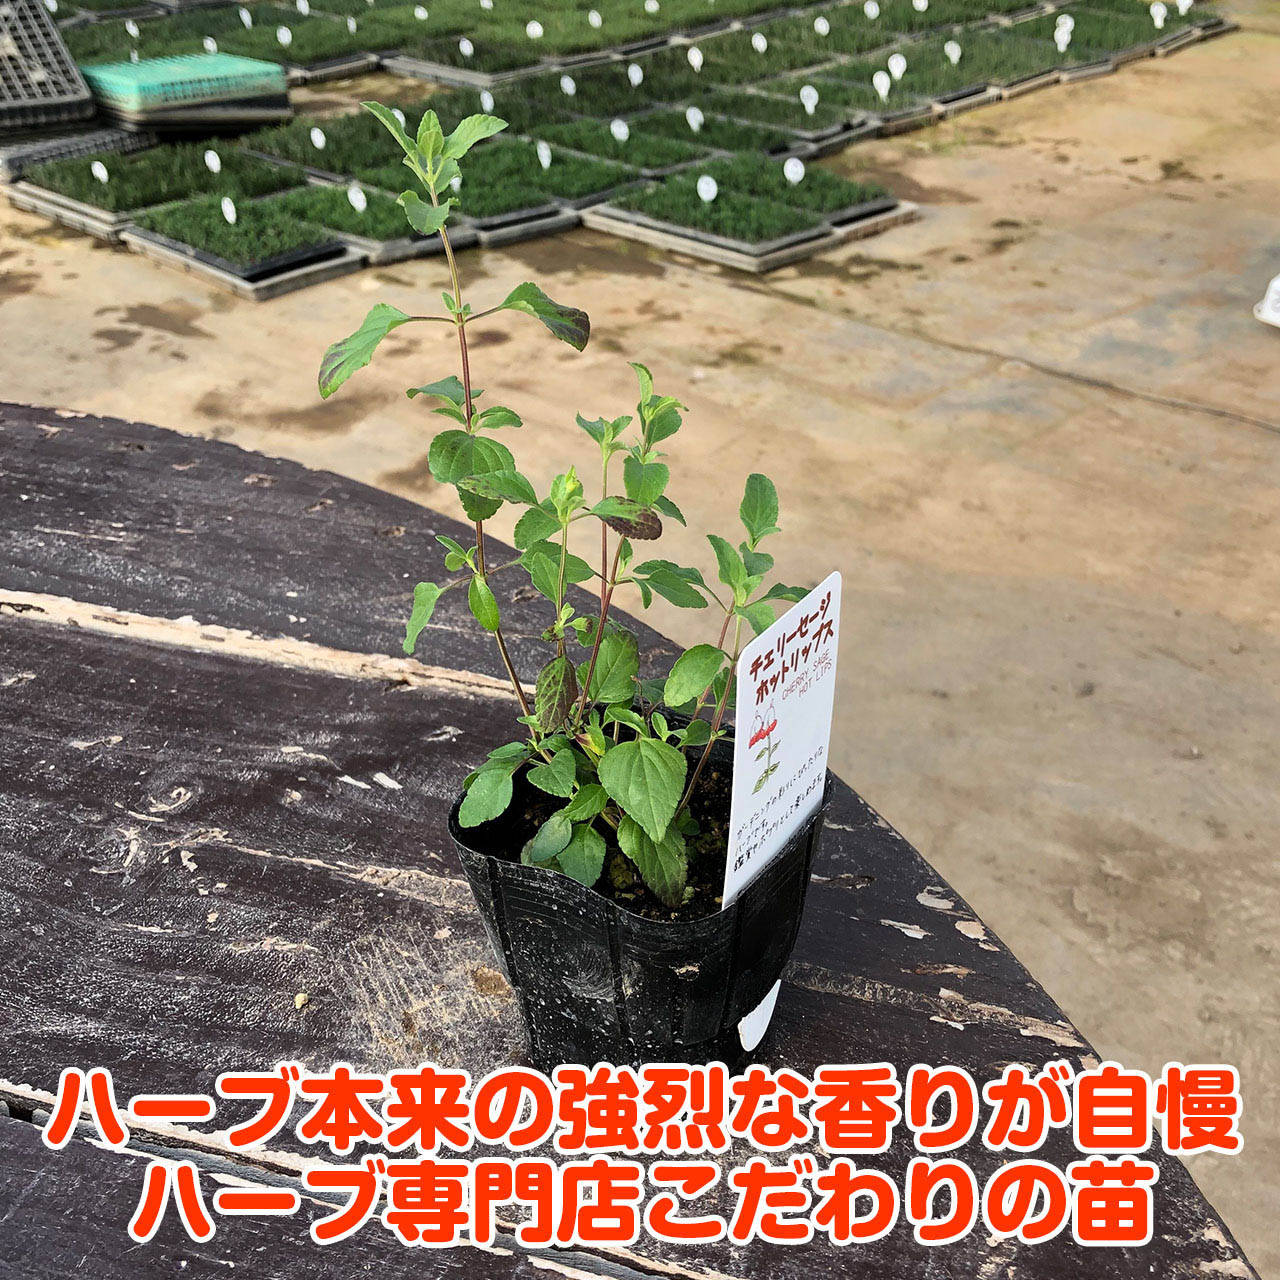  herb seedling Cherry sage hot lips ( kind cultivation herb tea herbgarden .. leaf flower gardening sapling fruit tree cultivation kit )